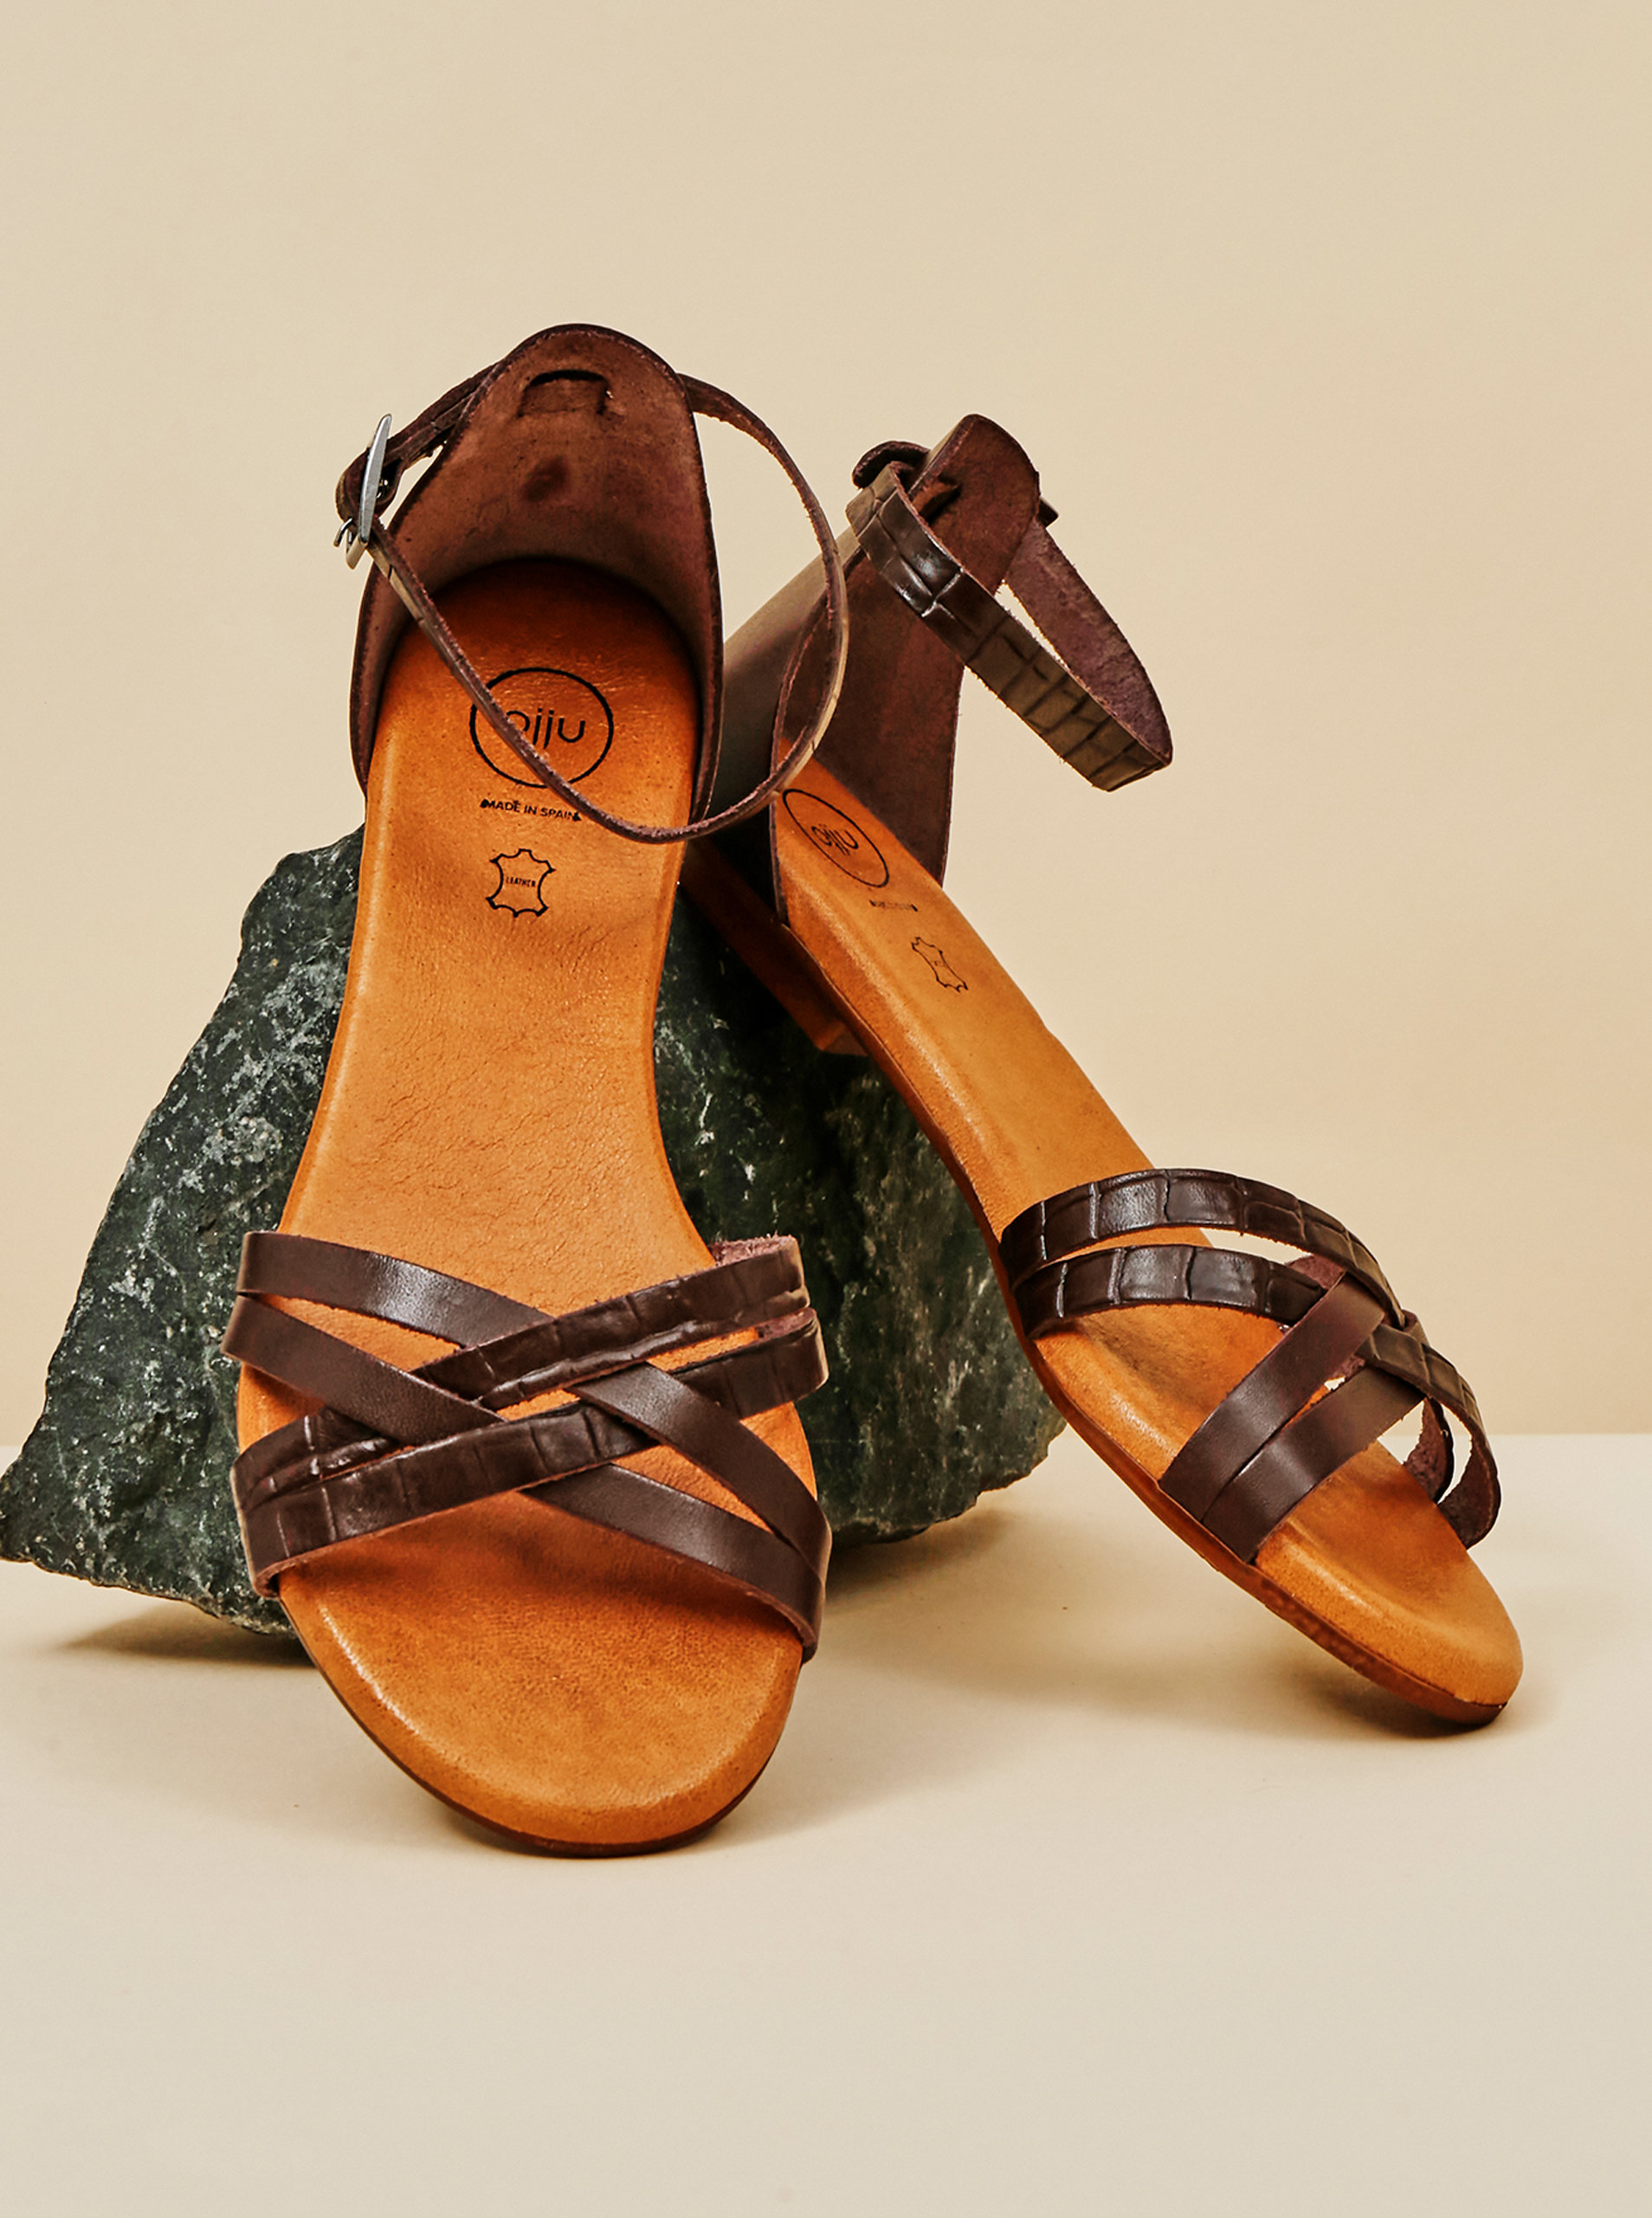 Fotografie Tmavě hnědé dámské kožené sandály OJJU OJJU A22:1306296_18942